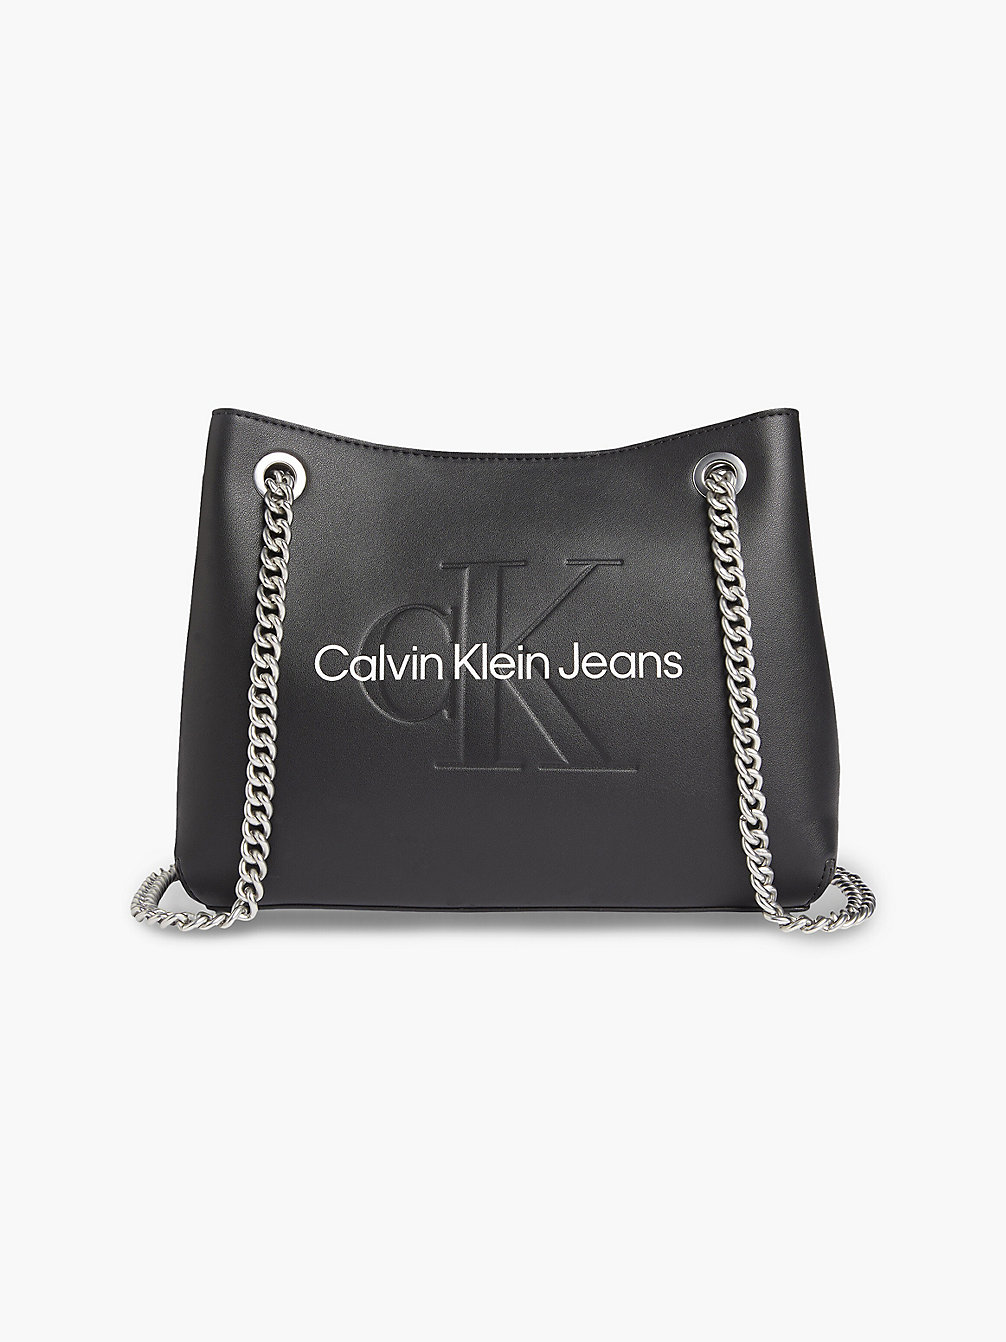 BLACK > Converteerbare Schoudertas > undefined dames - Calvin Klein